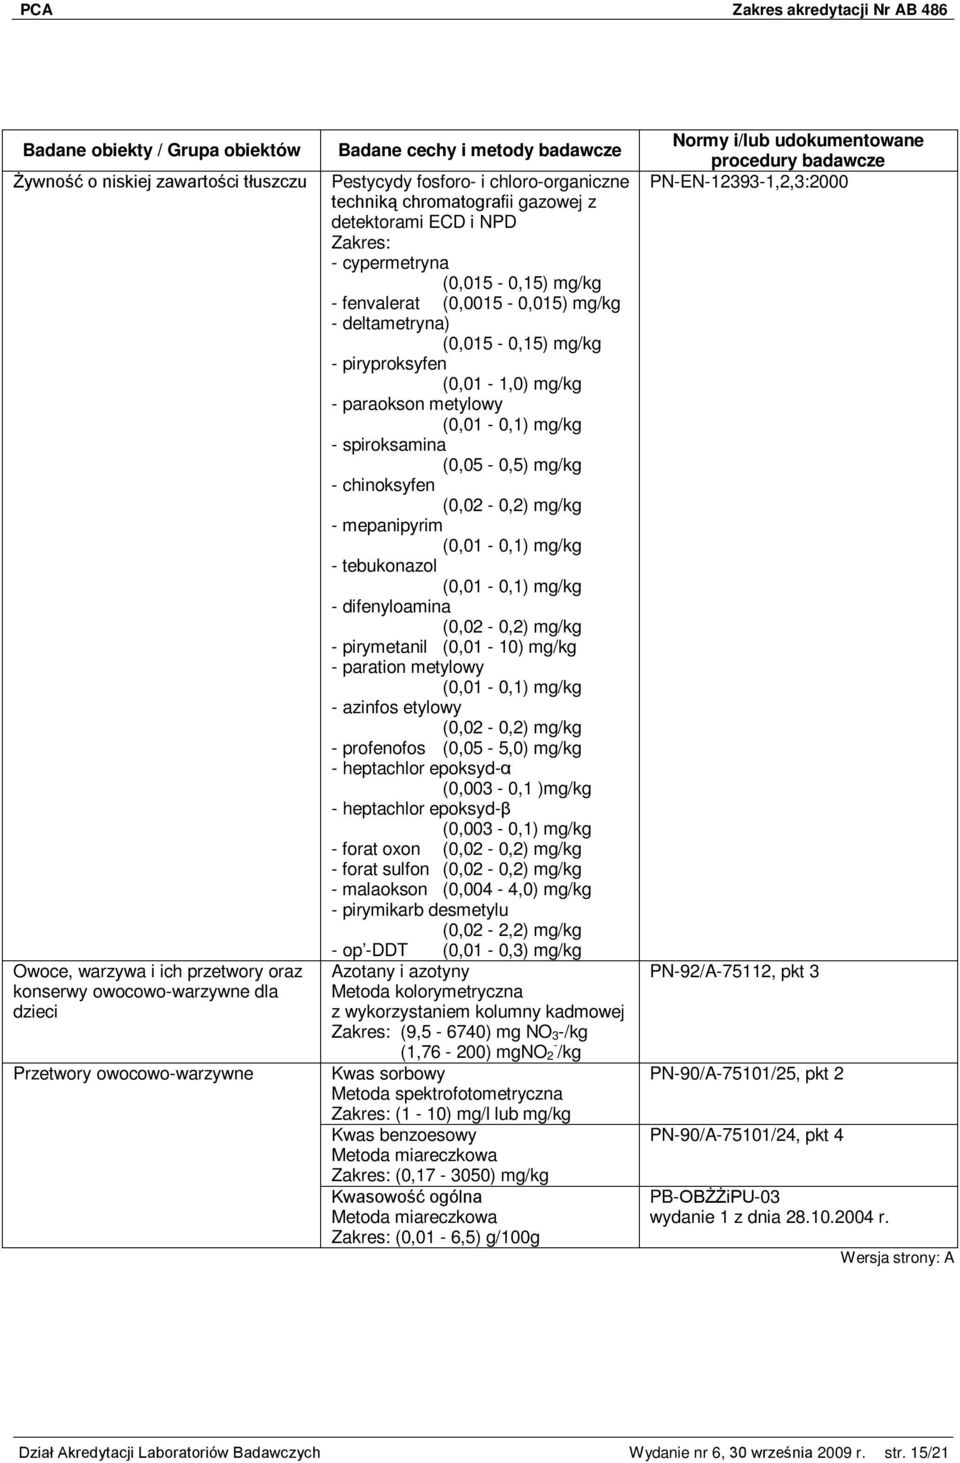 metylowy (0,01-0,1) mg/kg - spiroksamina (0,05-0,5) mg/kg - chinoksyfen (0,02-0,2) mg/kg - mepanipyrim (0,01-0,1) mg/kg - tebukonazol (0,01-0,1) mg/kg - difenyloamina (0,02-0,2) mg/kg - pirymetanil